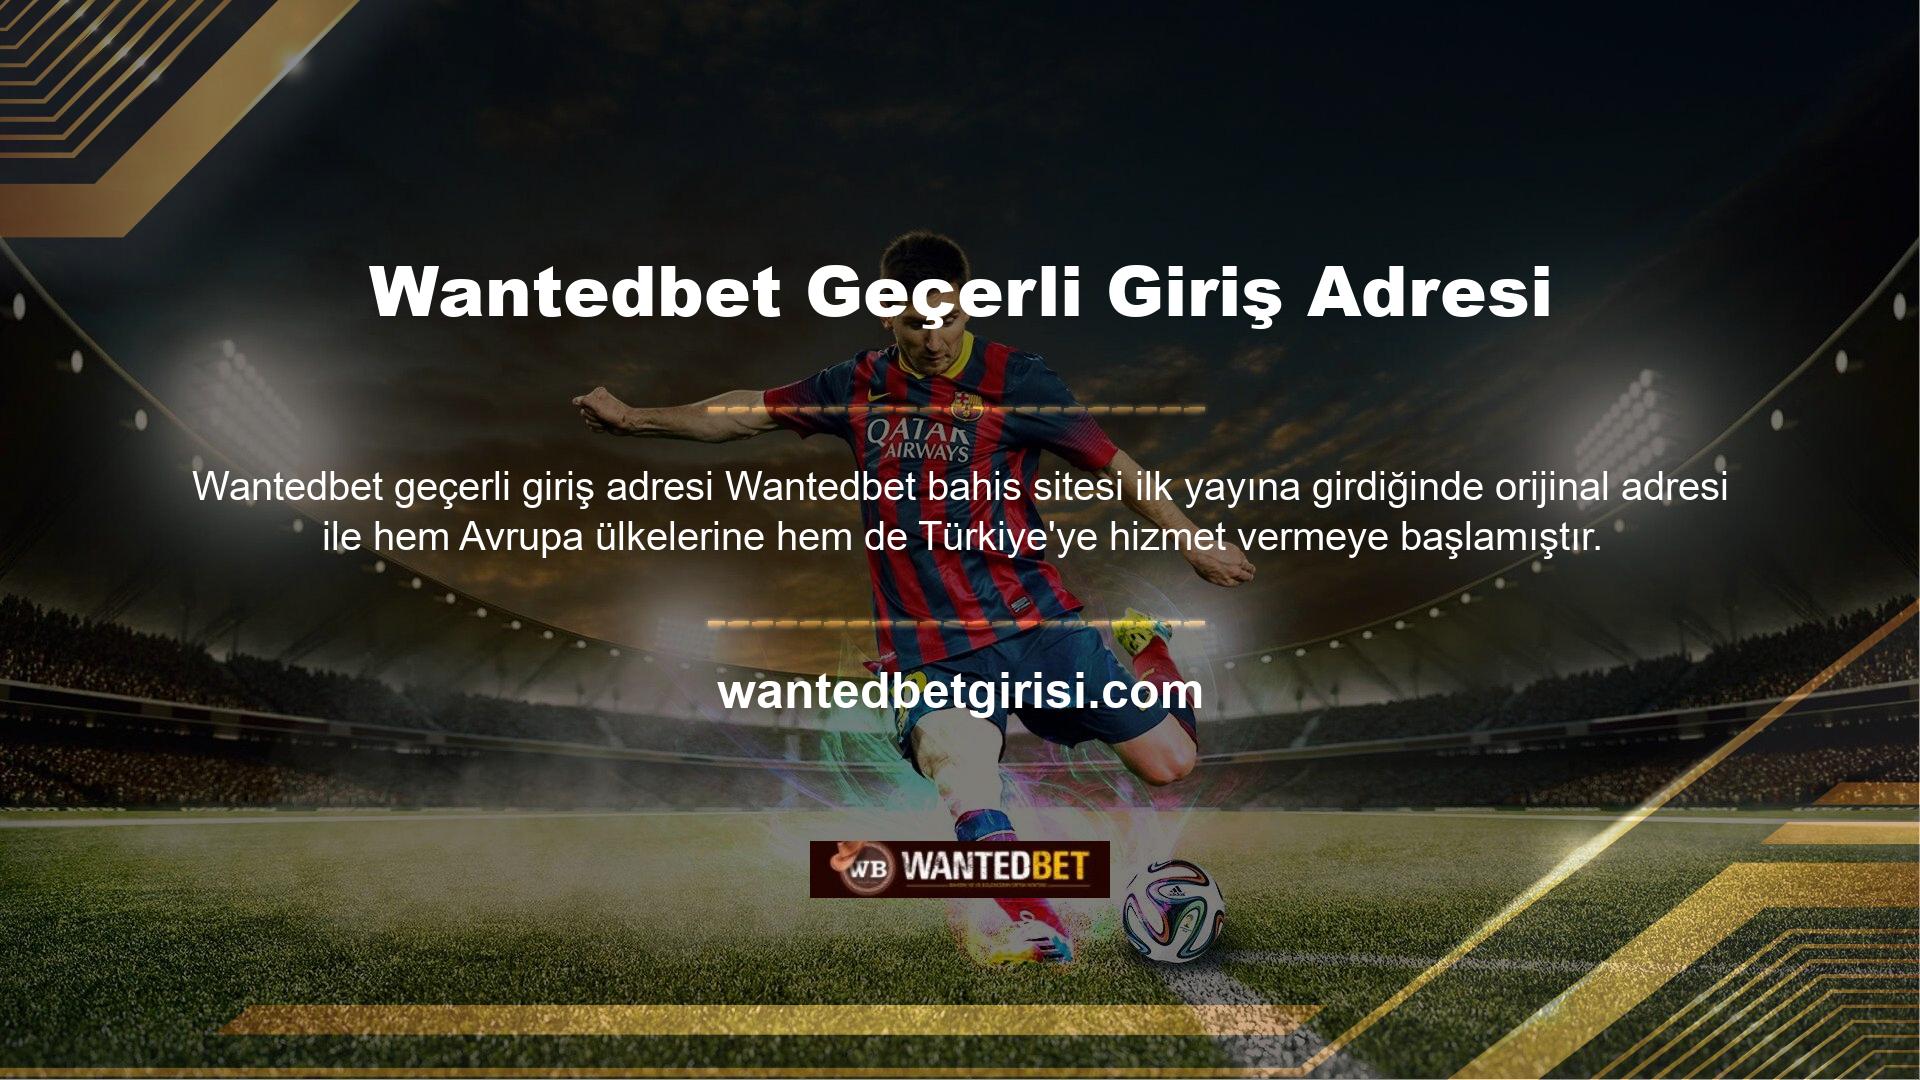 Wantedbet yeni adresi Türkiye'de açıldıktan kısa bir süre sonra internet erişimi kontrol edildikten sonra BTK tarafından engellendi